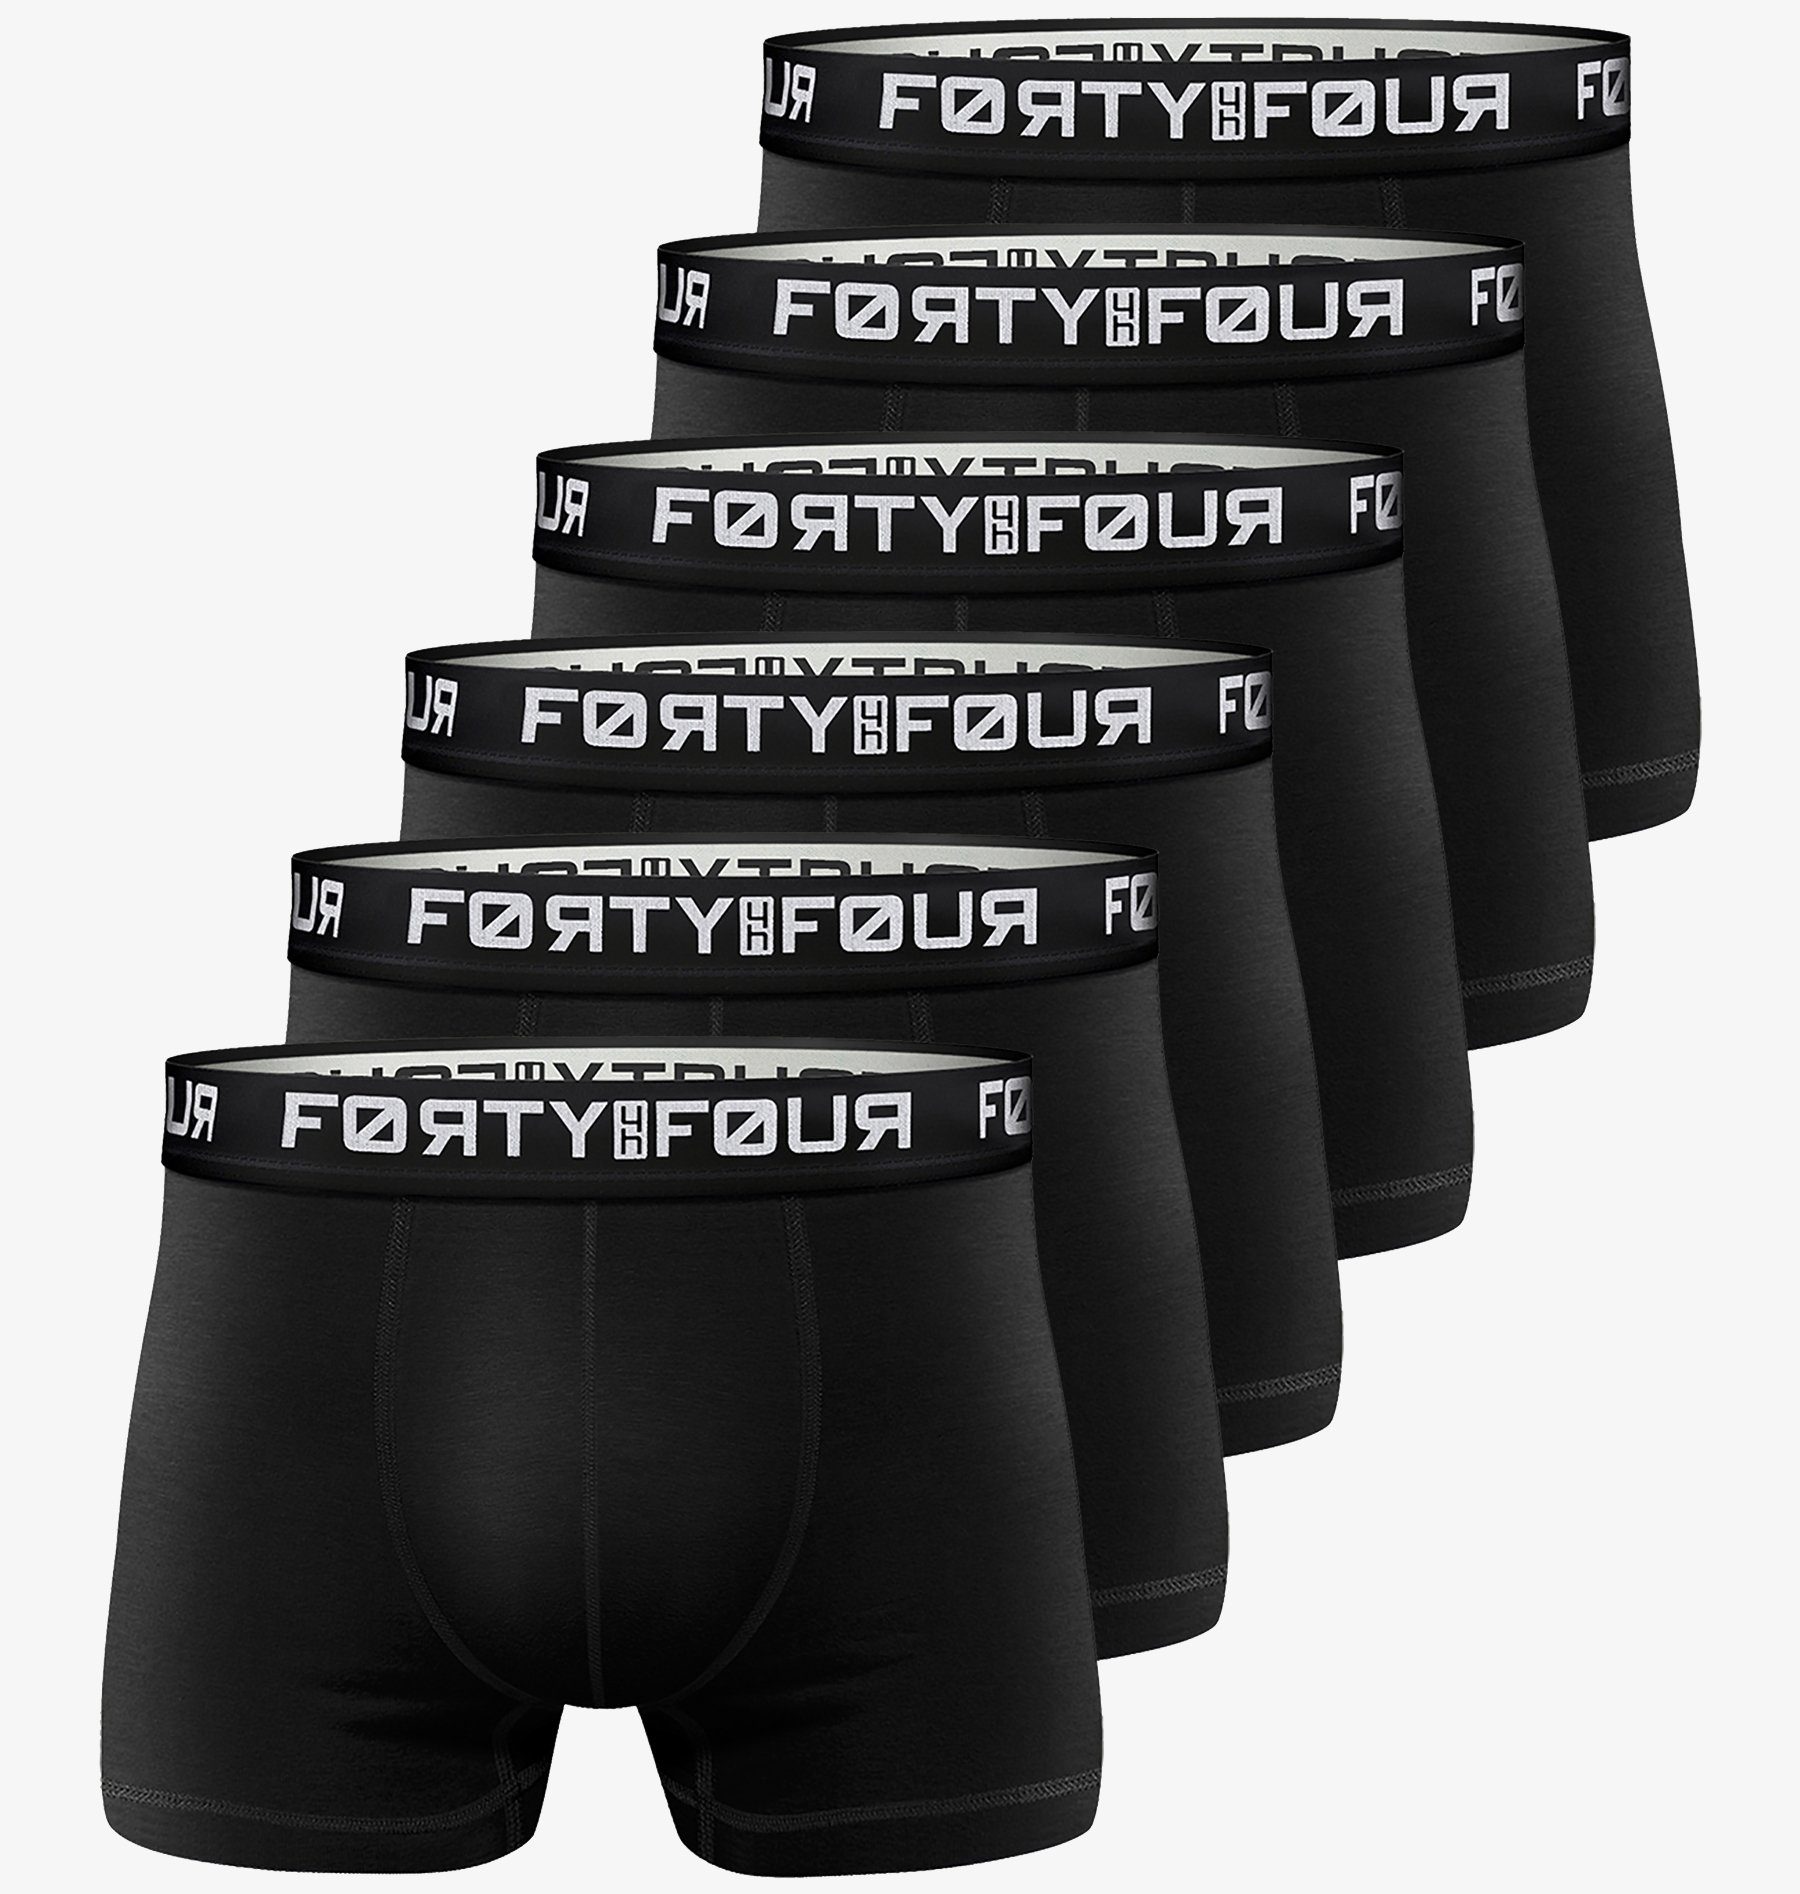 FortyFour Боксерские мужские трусы, боксерки Herren Männer Unterhosen Baumwolle Premium Qualität perfekte Passform (Vorteilspack, 6er Pack) S - 7XL